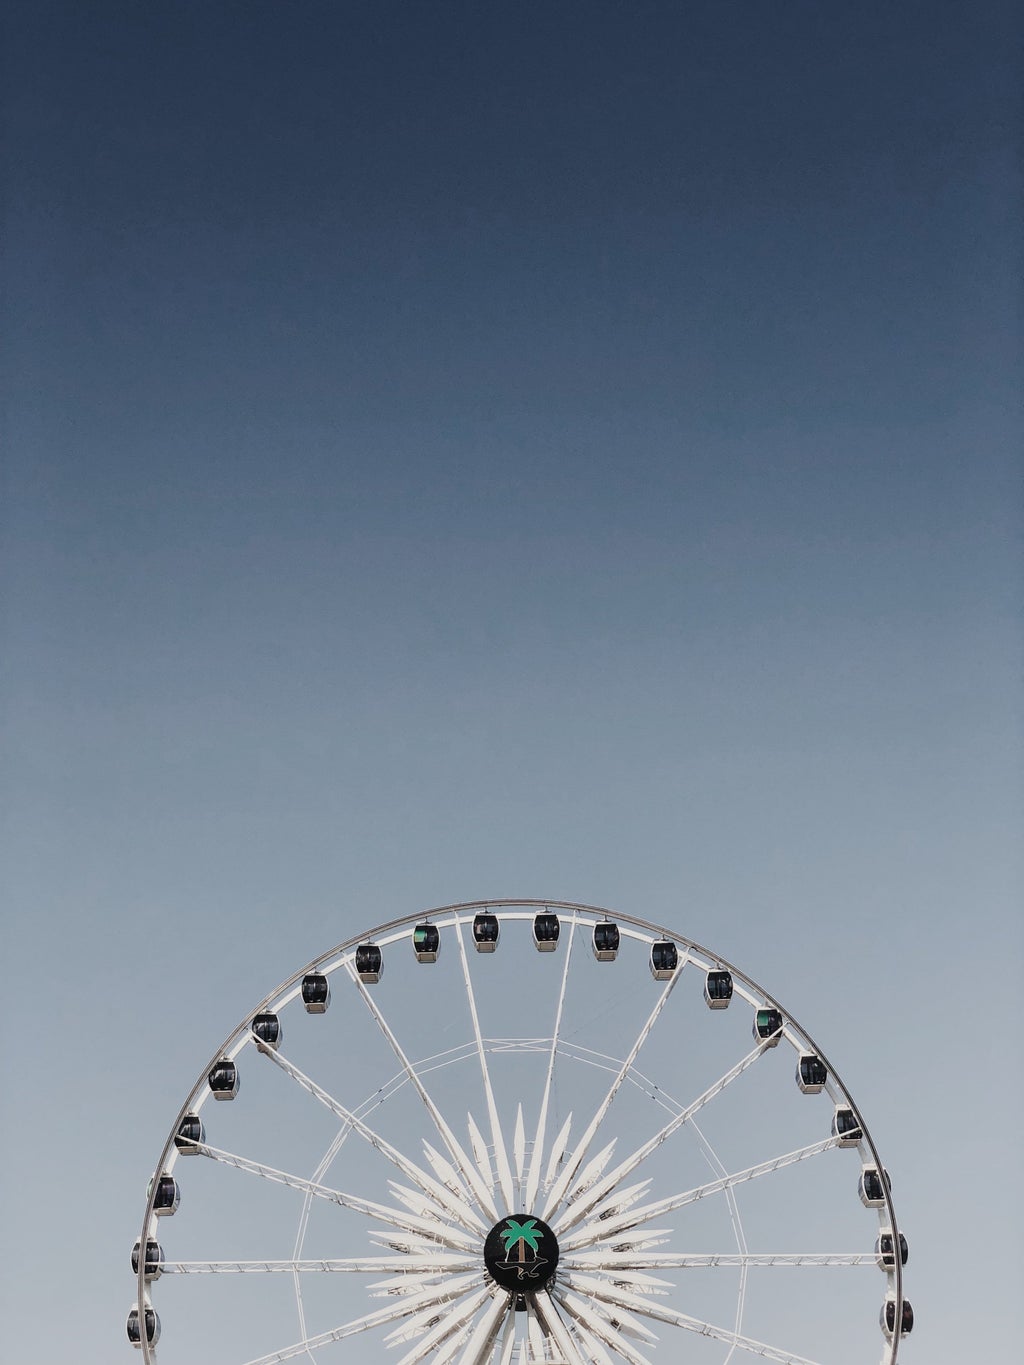 Coachella Ferris wheel